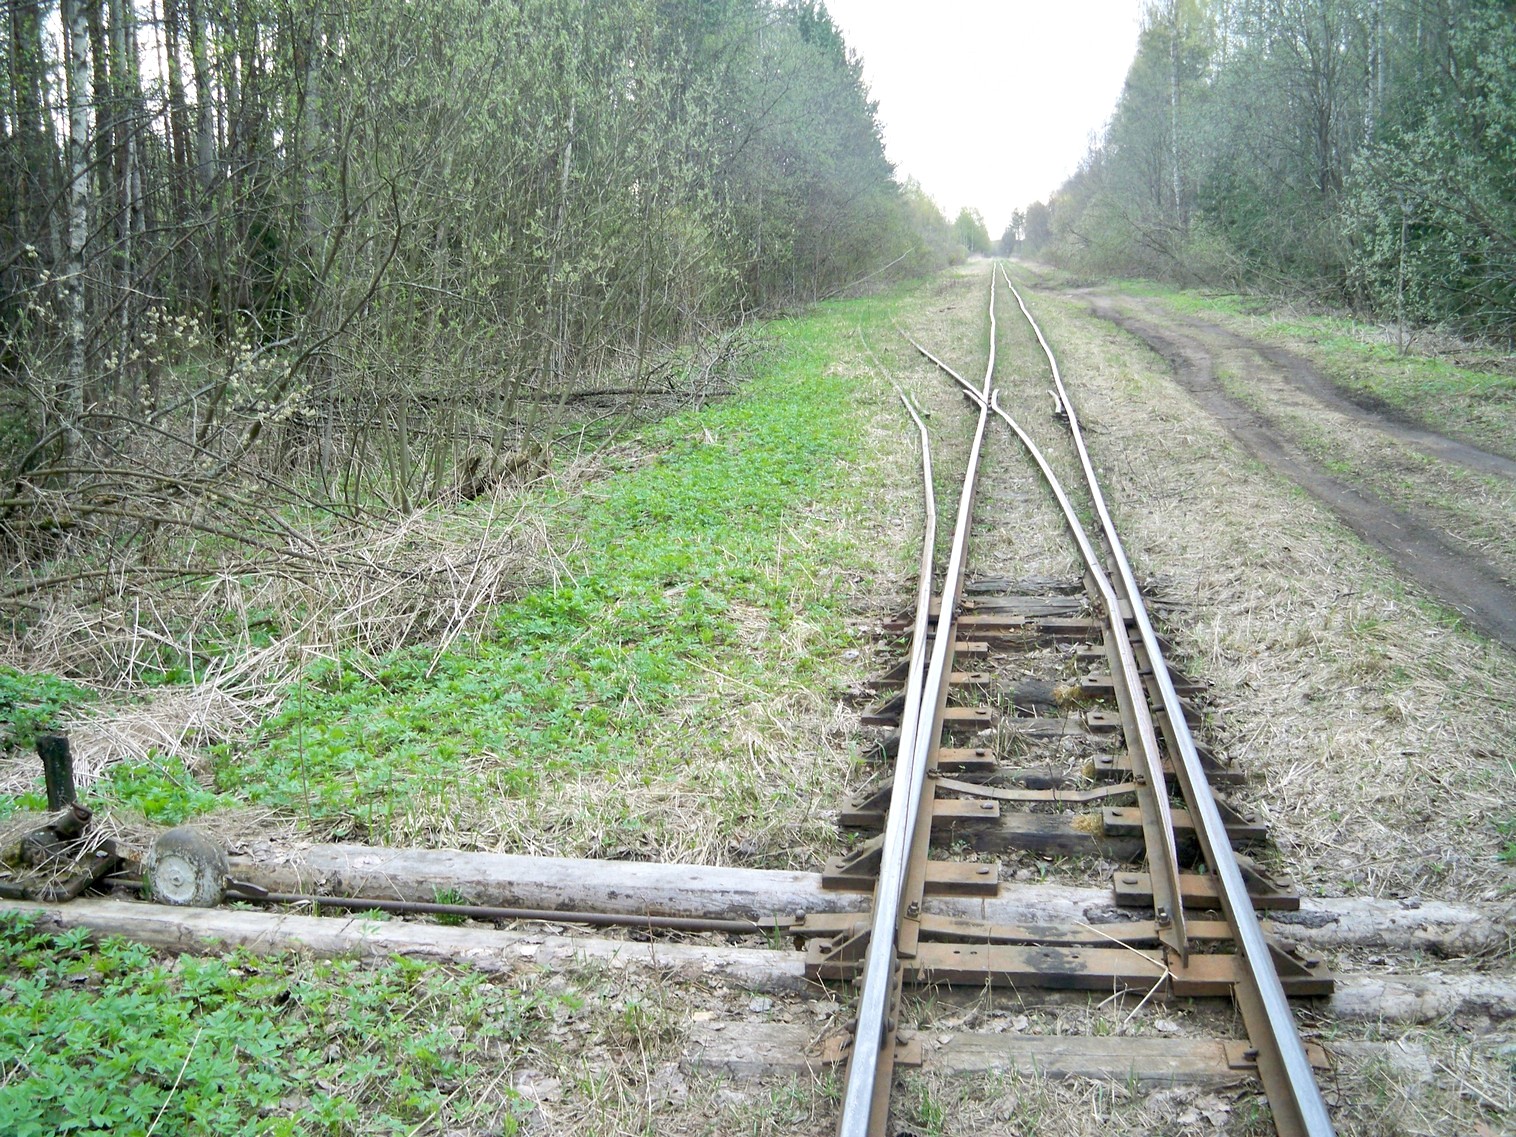 Узкоколейная железная дорога Васильевского предприятия промышленного железнодорожного транспорта  — фотографии, сделанные в 2014 году (часть 11)